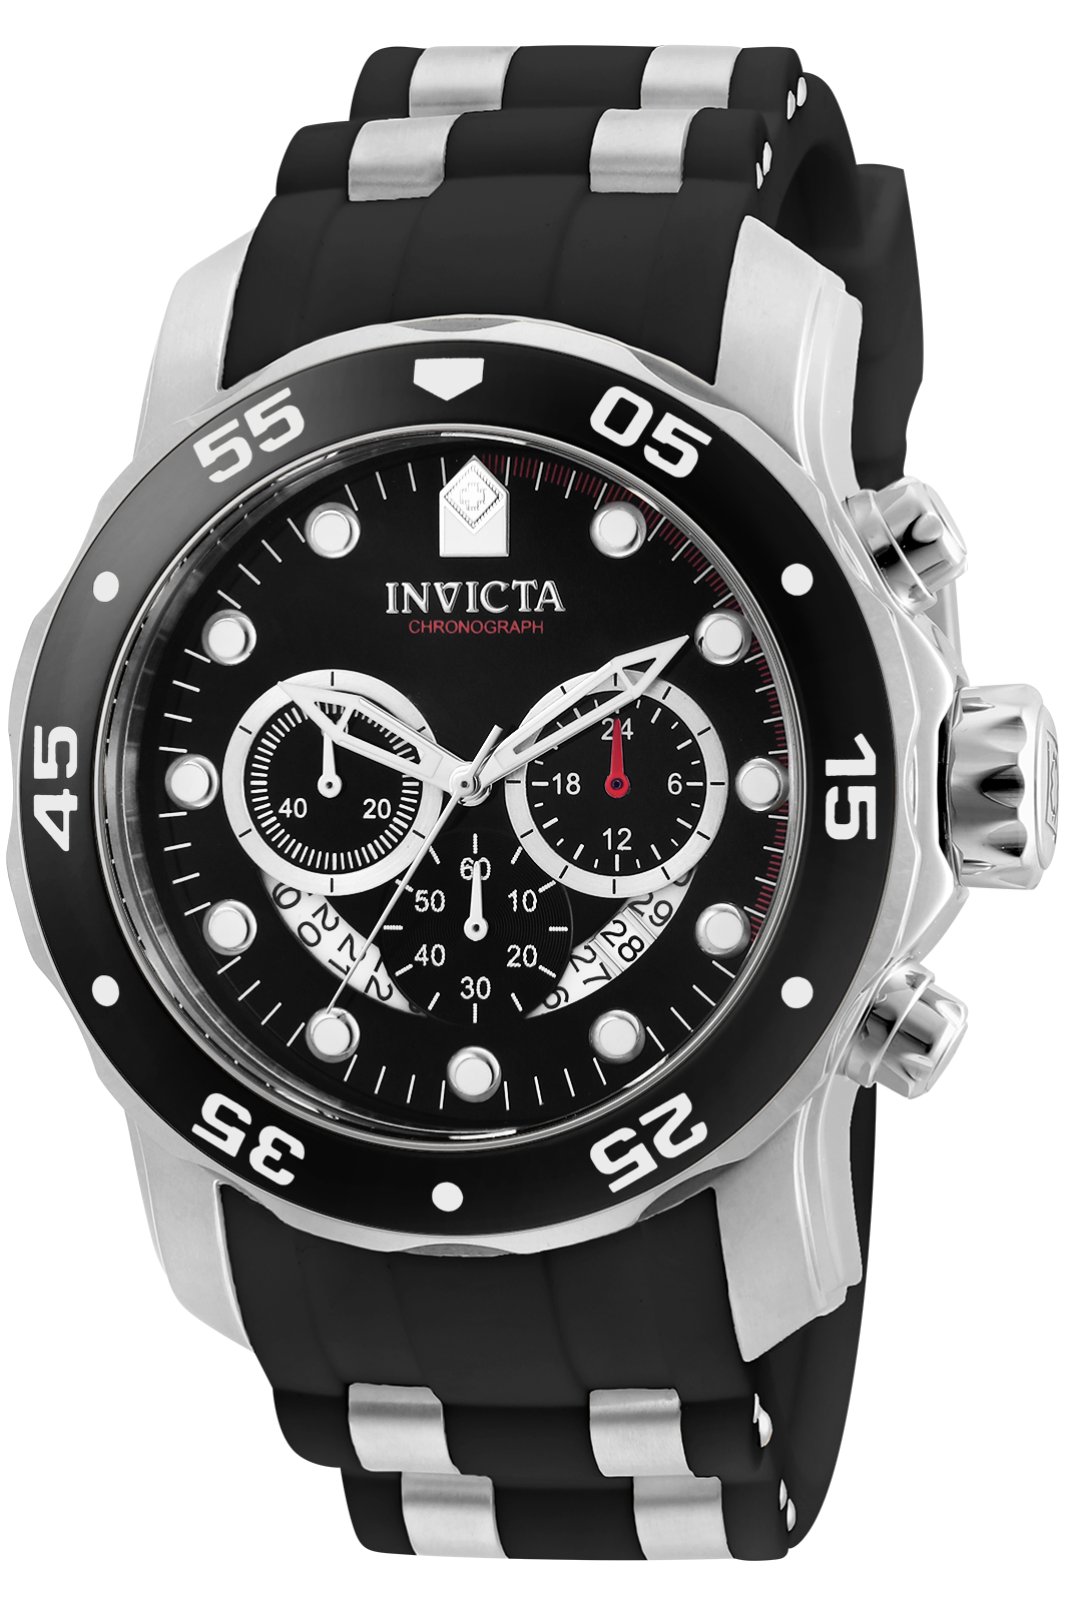 Invicta Pro Diver - SCUBA 6977 Men's Quartz Watch - 48mm